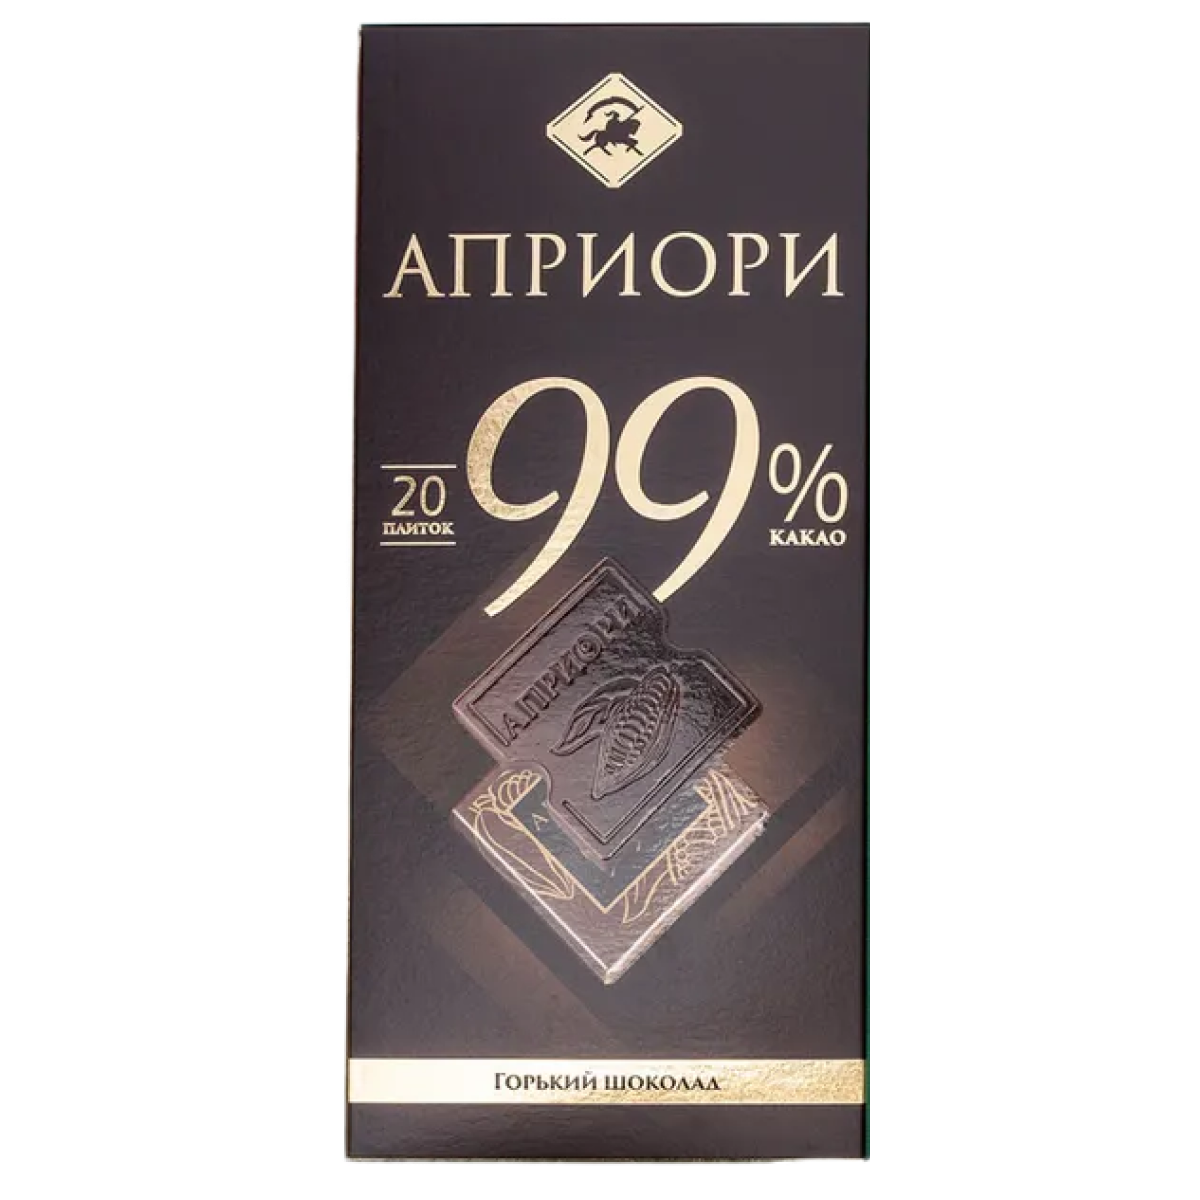 Шоколад с 99% какао